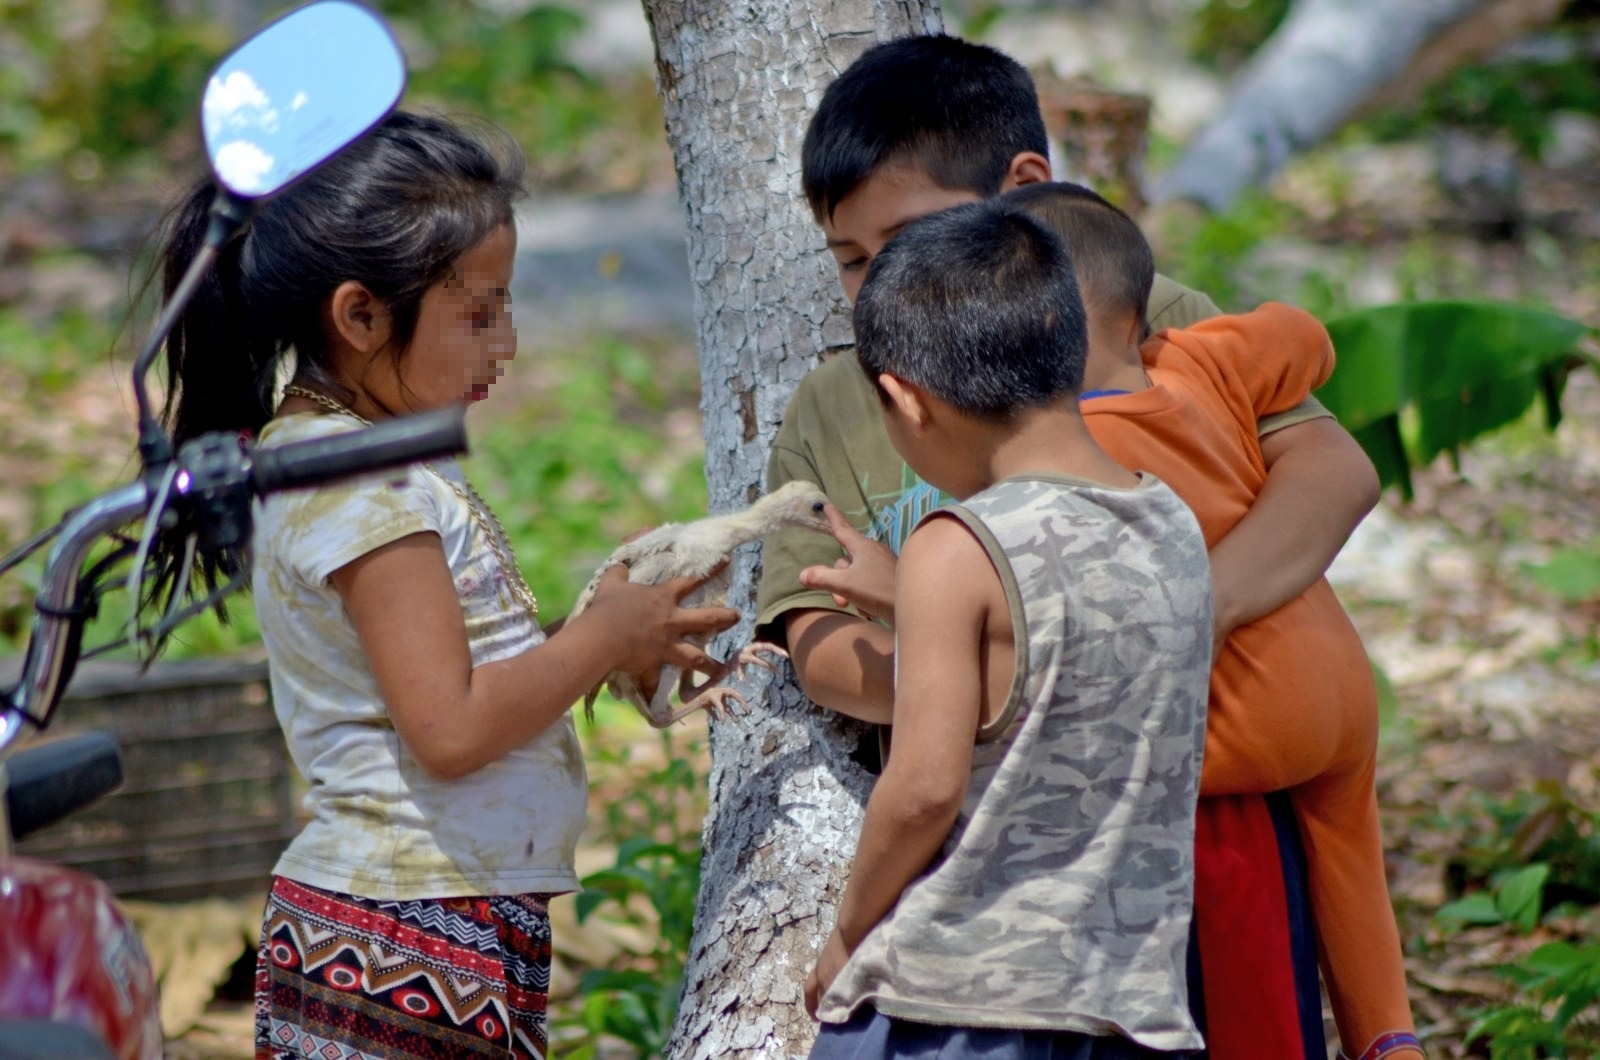 Niños de Campeche, Chiapas, Quintana Roo, Tabasco y Yucatán carecen de actividades y materiales que estimulen su aprendizaje, como libros: Ensanut